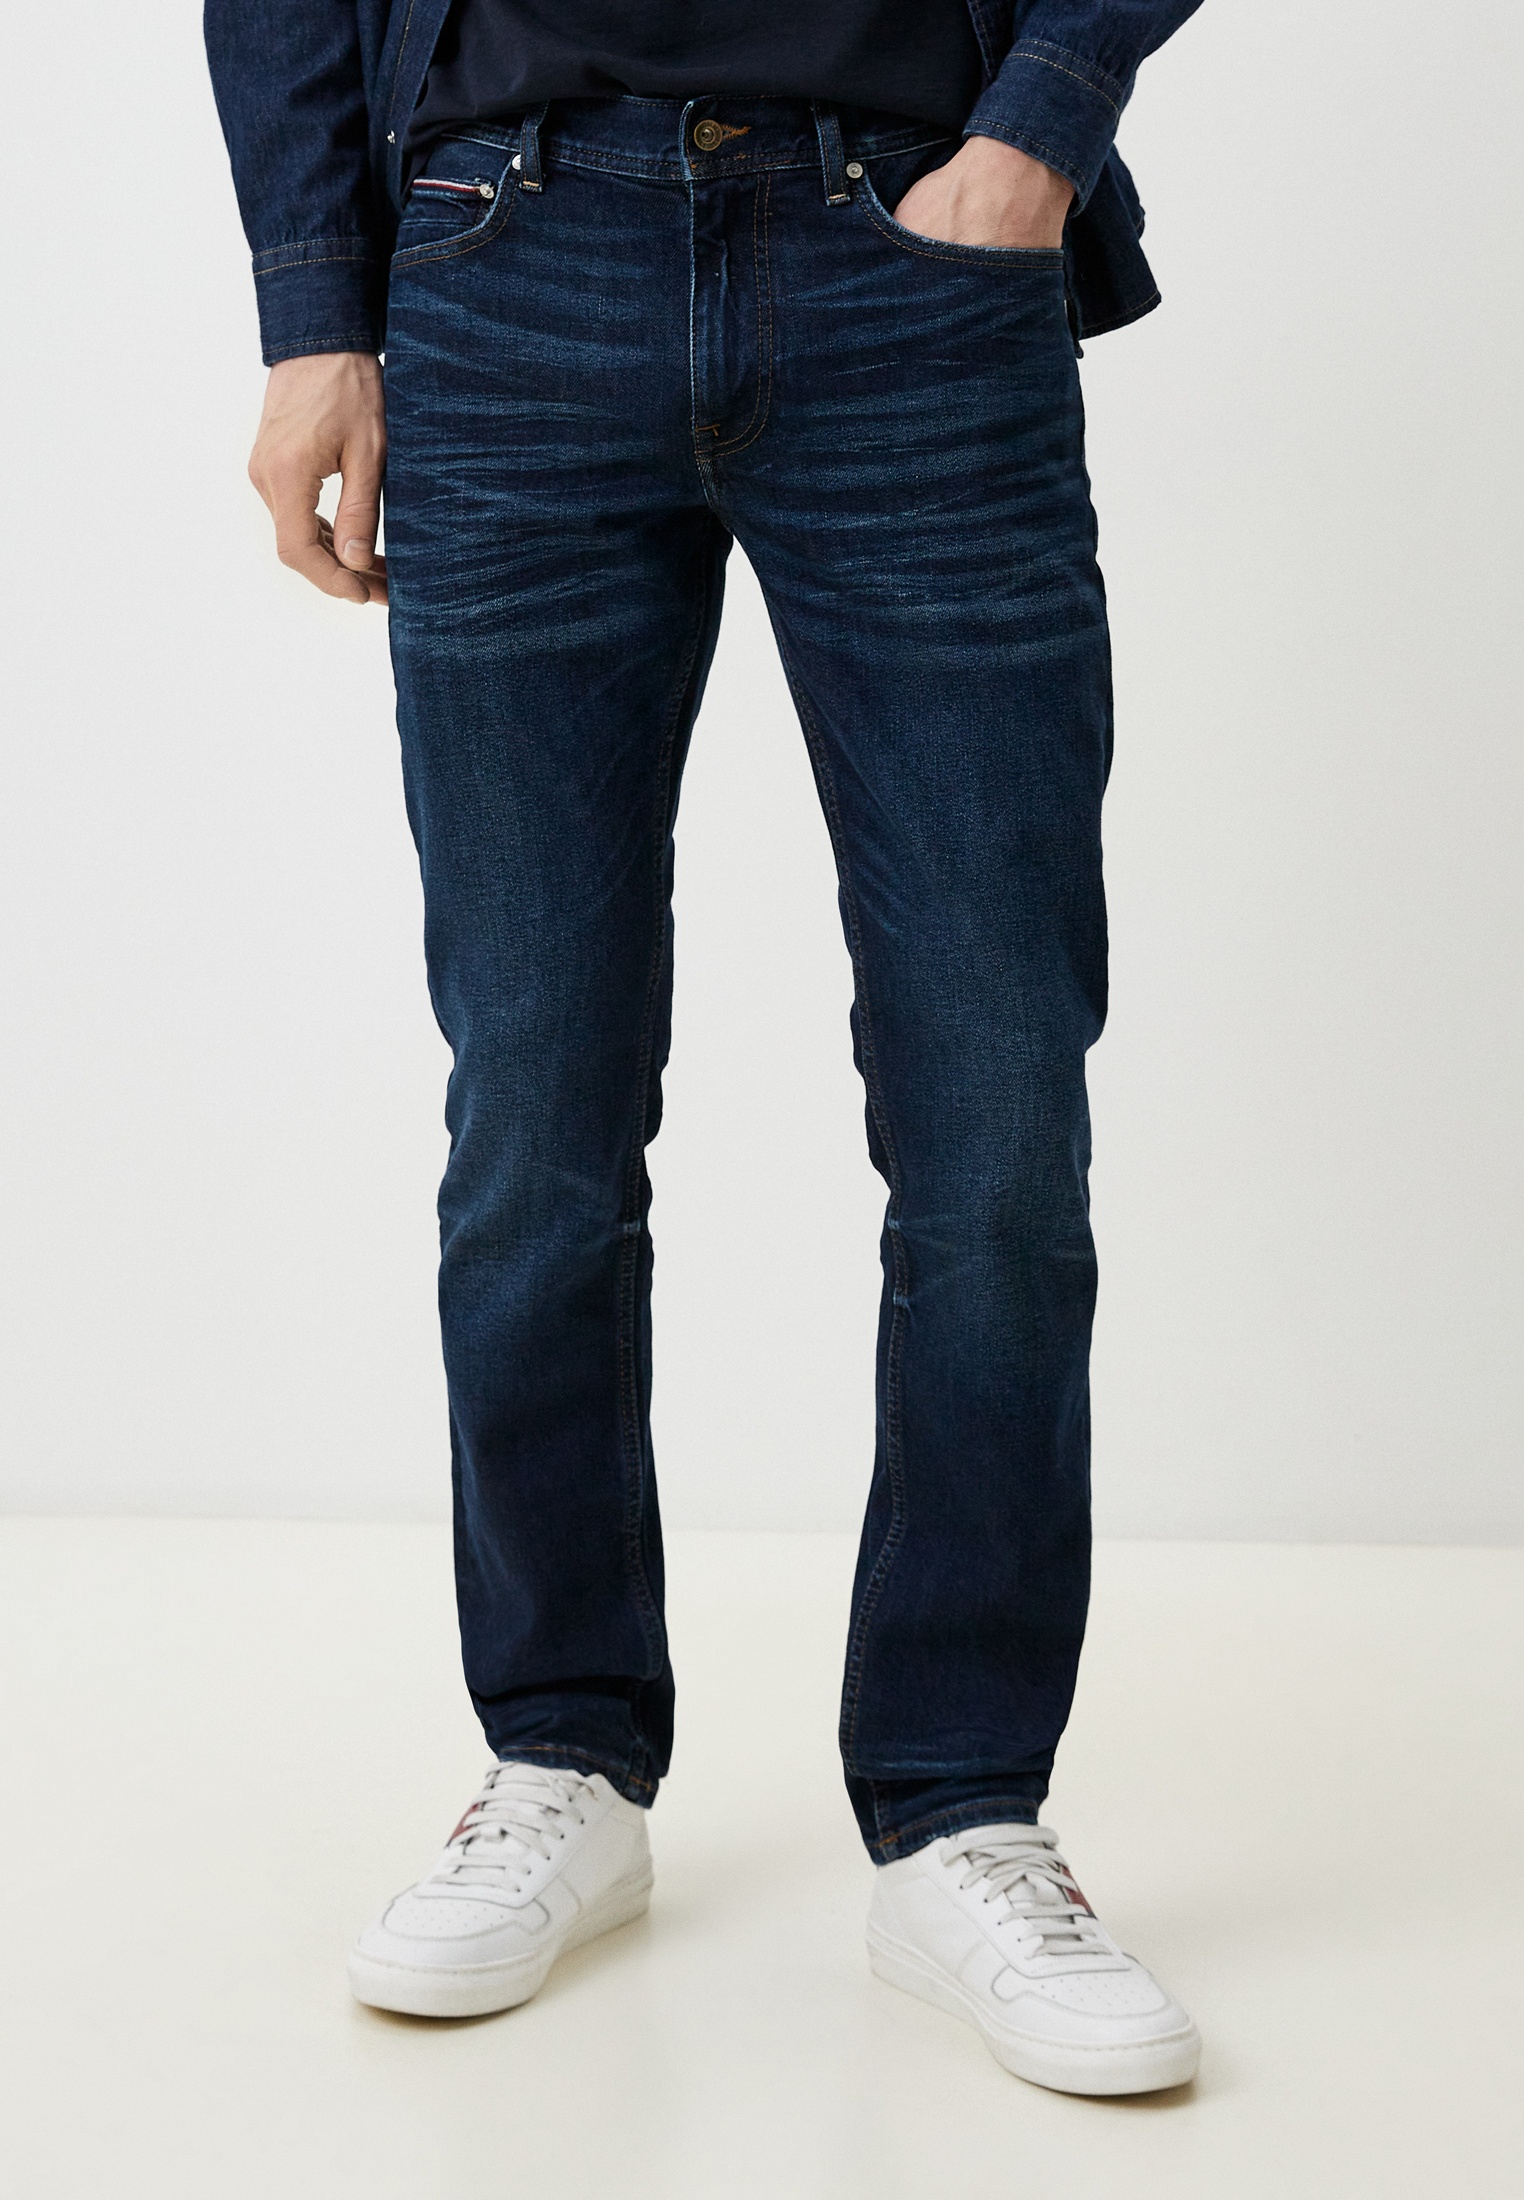 Мужские прямые джинсы Tommy Hilfiger (Томми Хилфигер) MW0MW33973